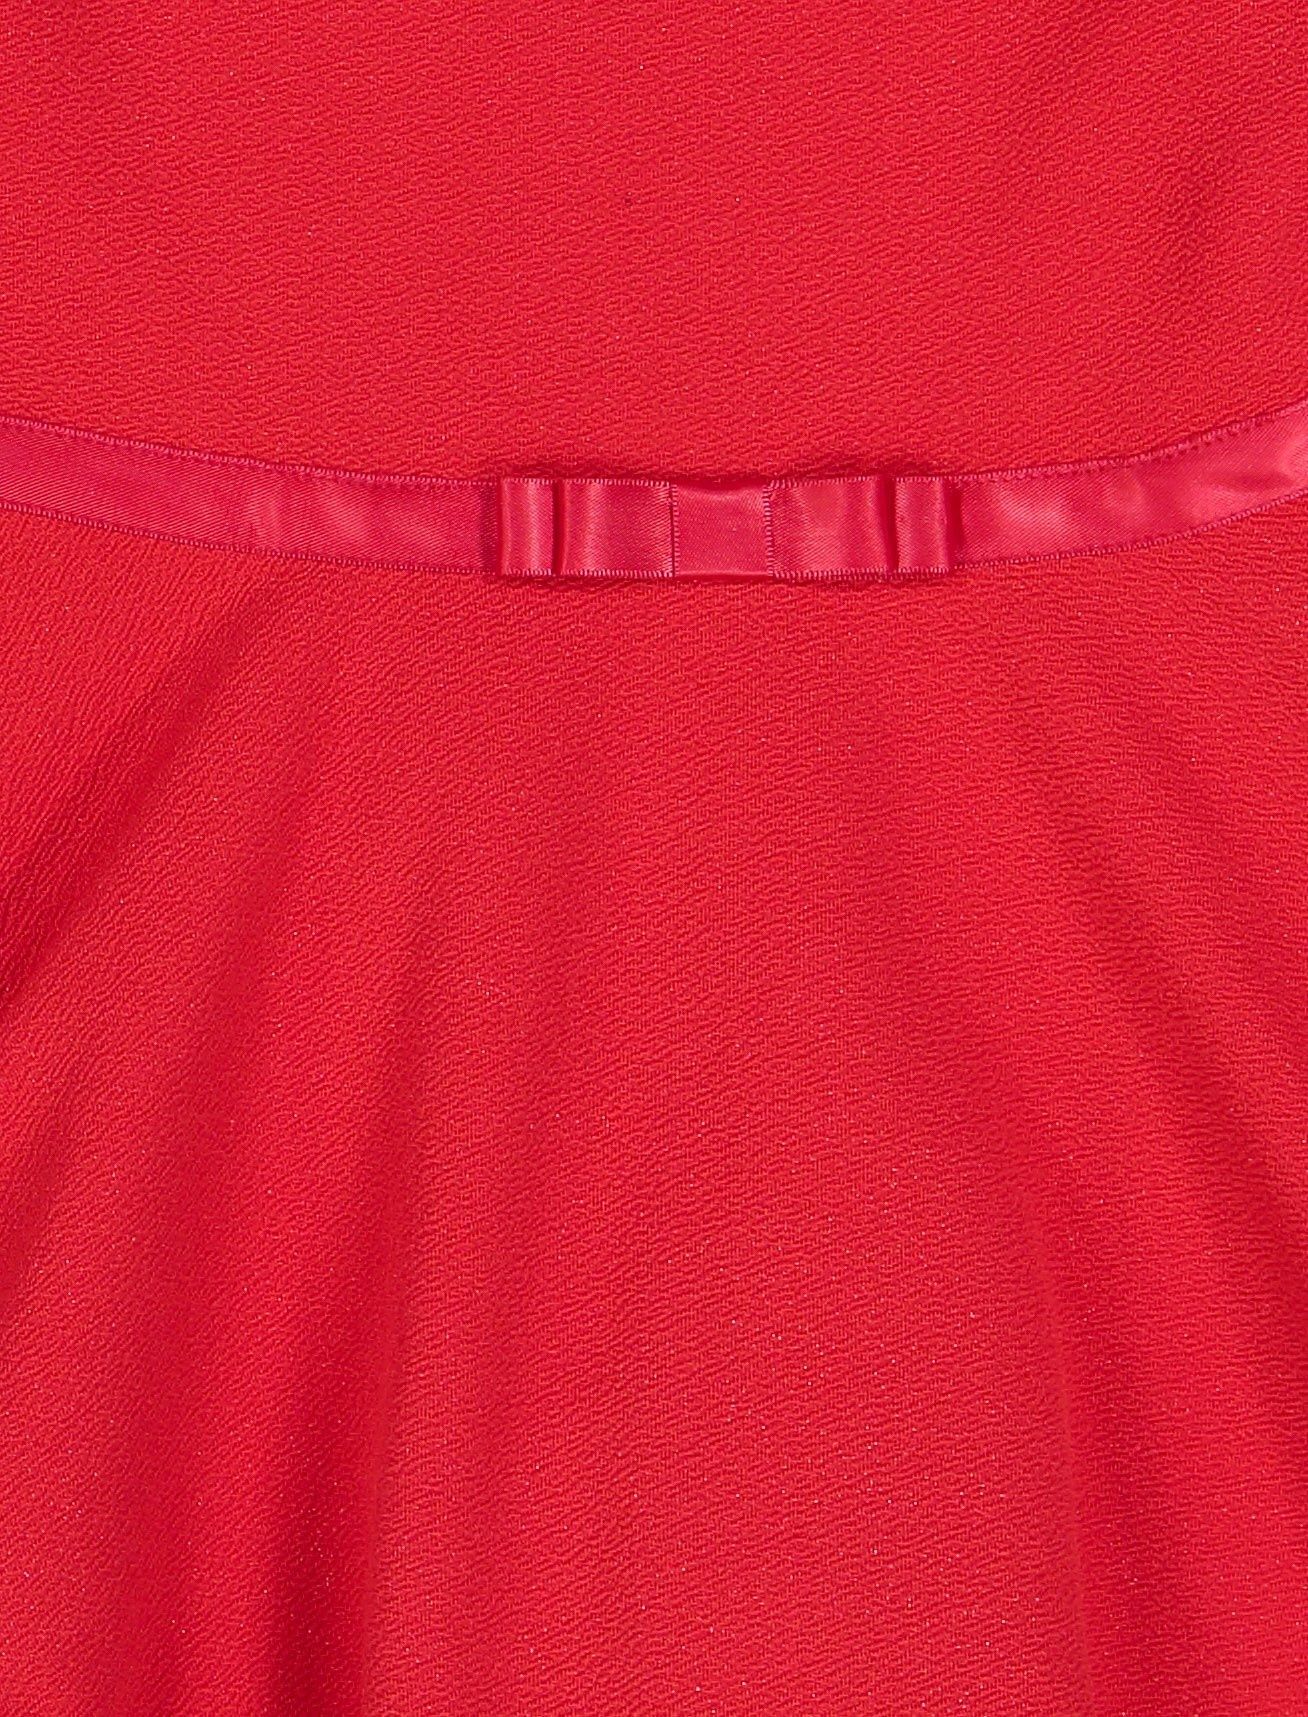 پیراهن مهمانی دخترانه - ایدکس - قرمز - 4